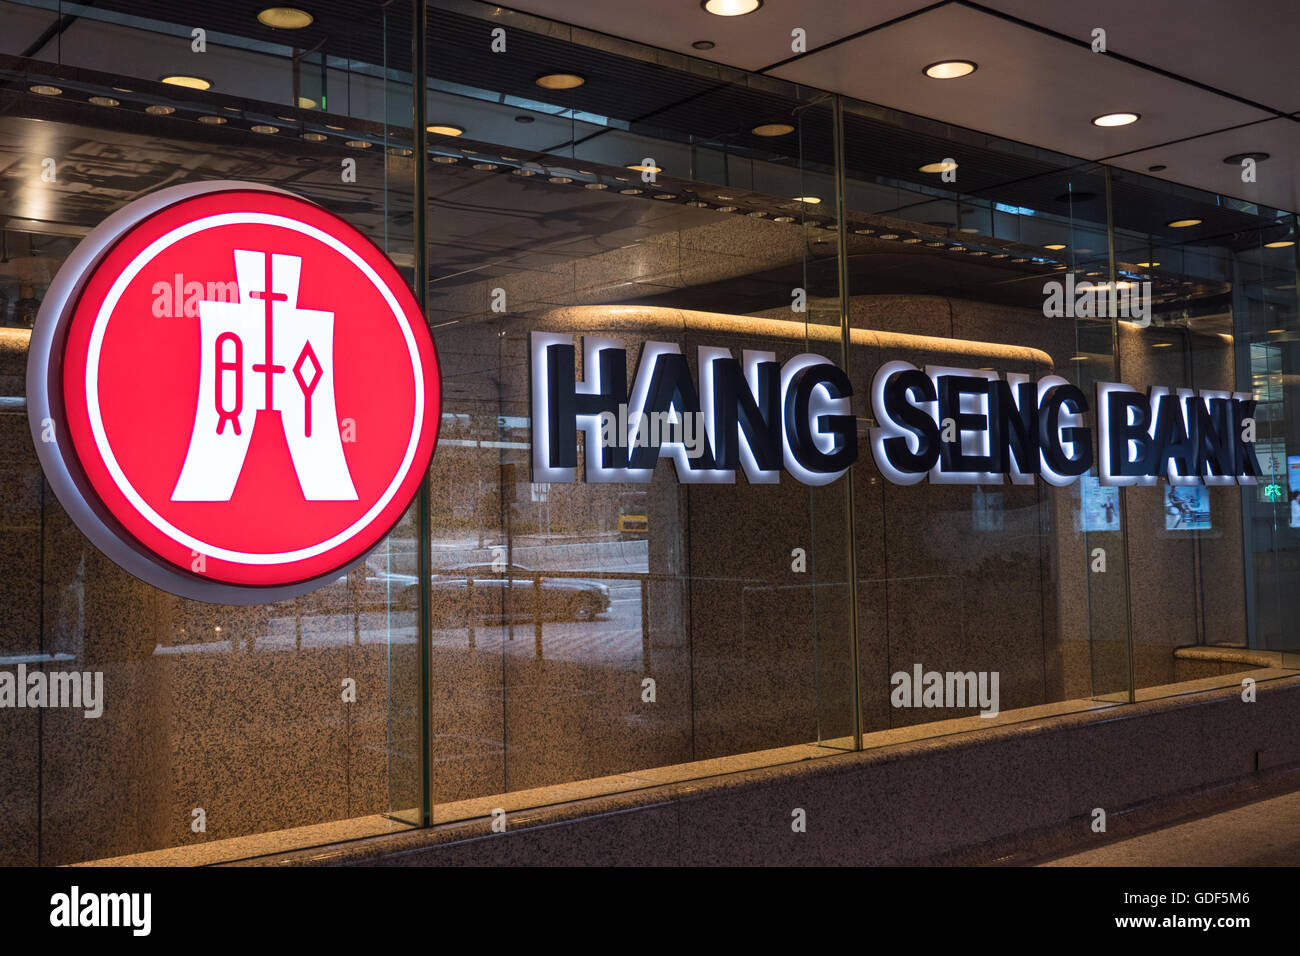 Hang Seng Bank offices, Hong Kong, China Stock Photo - Alamy